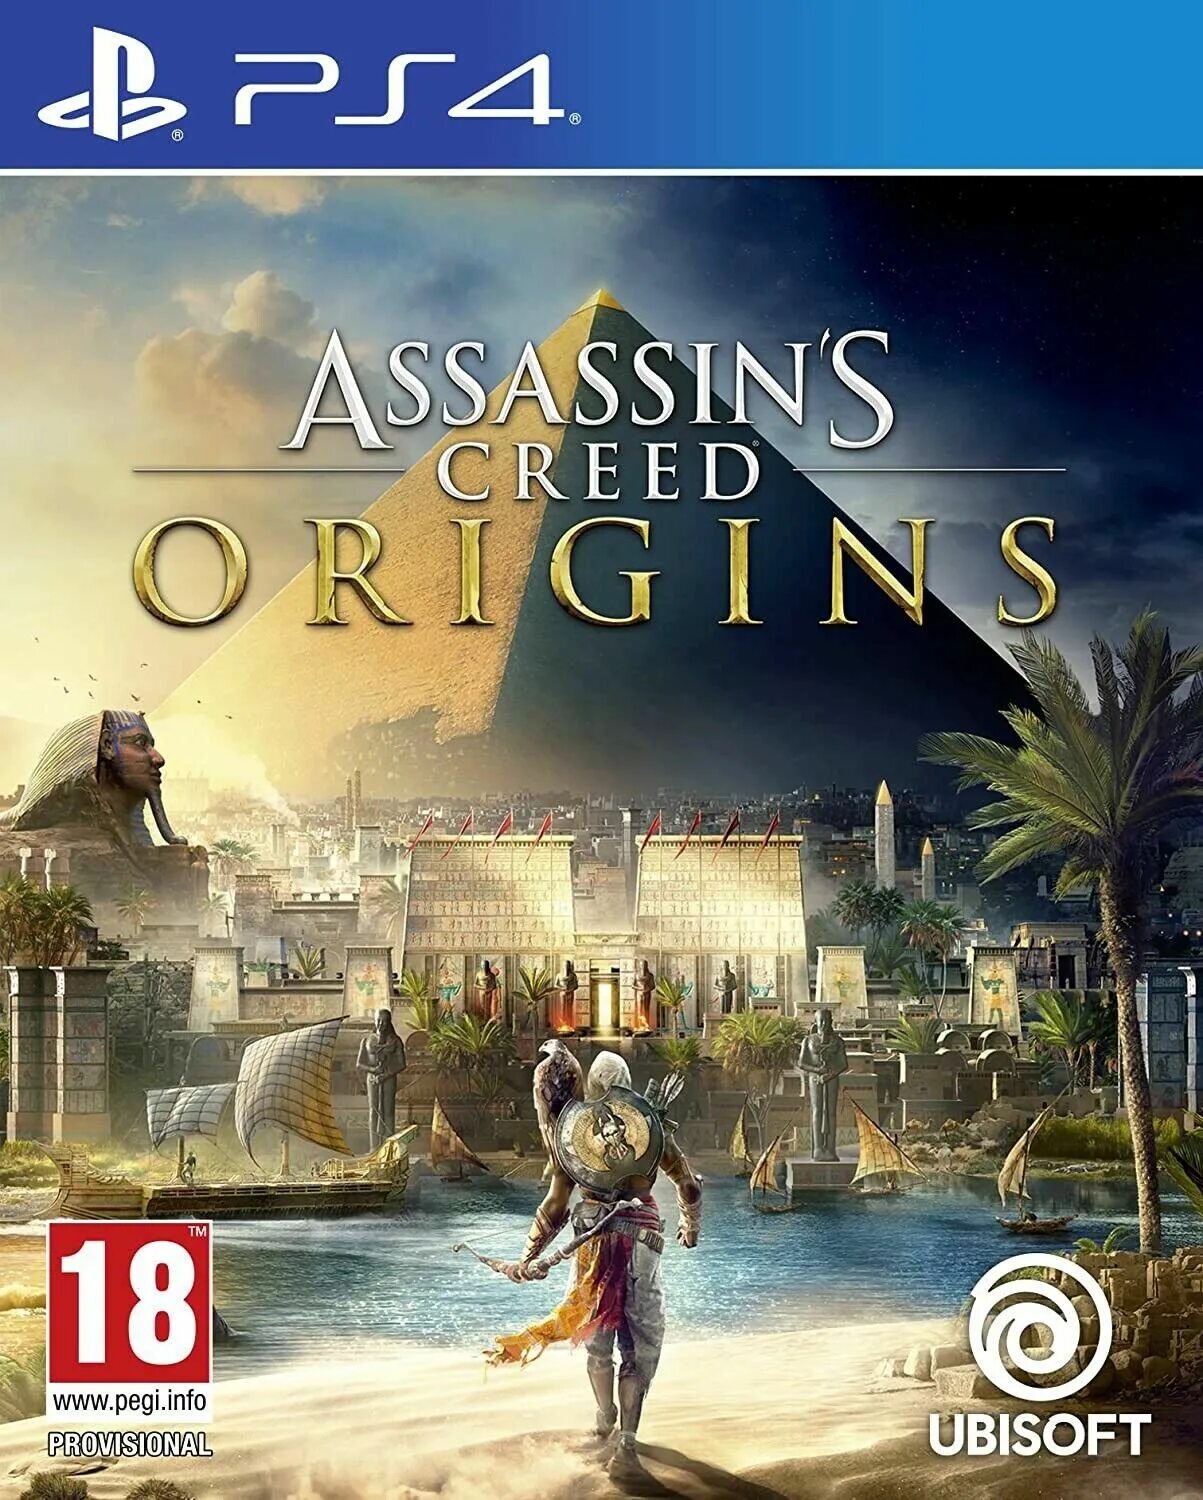 Ubisoft ps4. Assassin's Creed Истоки обложка. Assassin’s Creed Origins обложка. Купить асасин ориджинс на ПС 4. Assassin’s Creed Identity обложка.